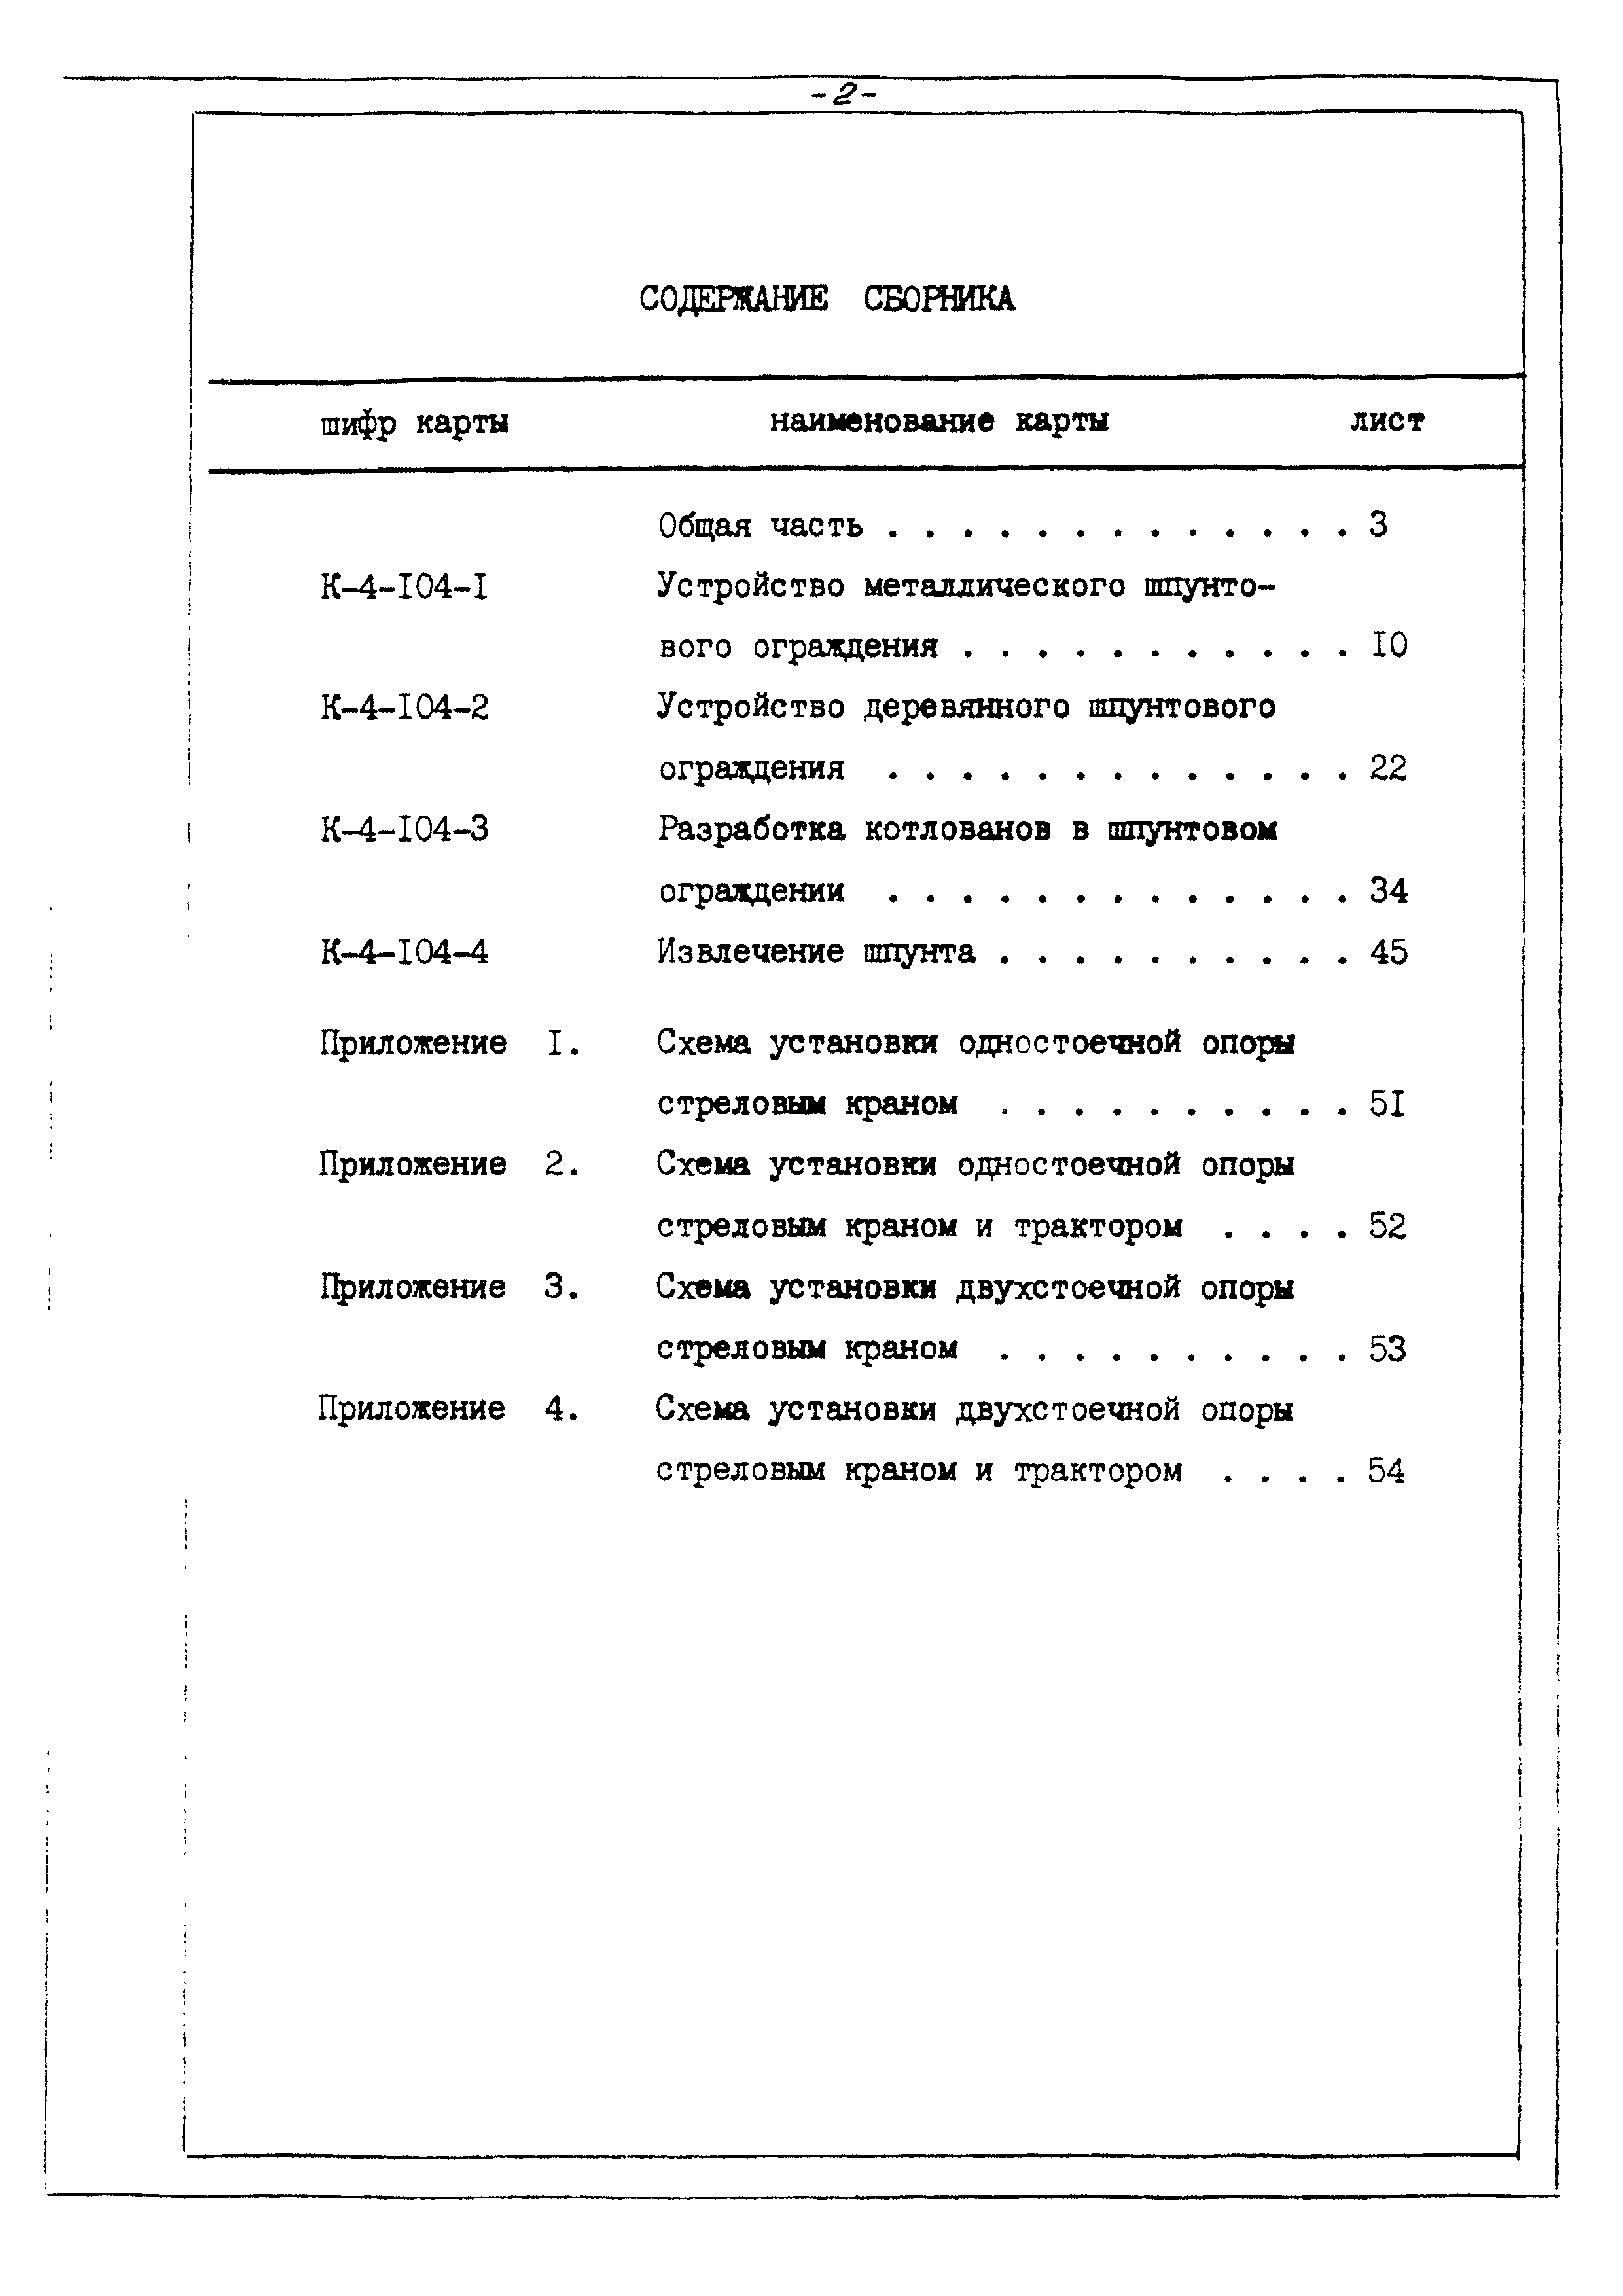 ТТК К-4-104-1